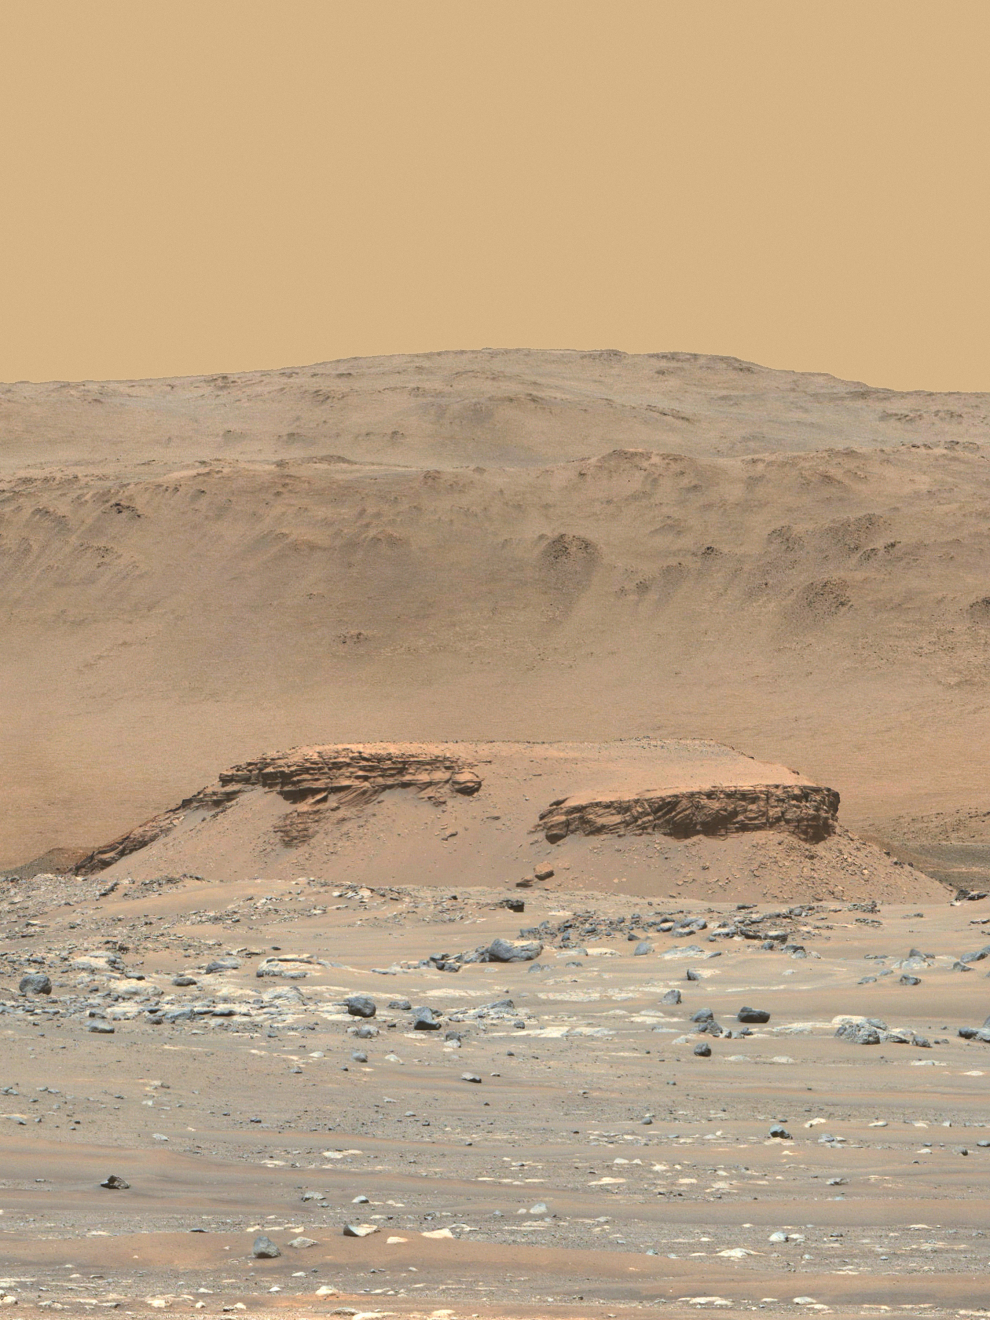 Esta imagen en color mejorada del cráter Jezero de Marte fue tomada por el instrumento Mastcam-Z. La colina de primer plano, llamada "Kodiak", está a 2,2 kilómetros del Rover. Las capas de rocas antiguas indican la deposición gradual de sedimentos en el delta de un río seguida de inundaciones.